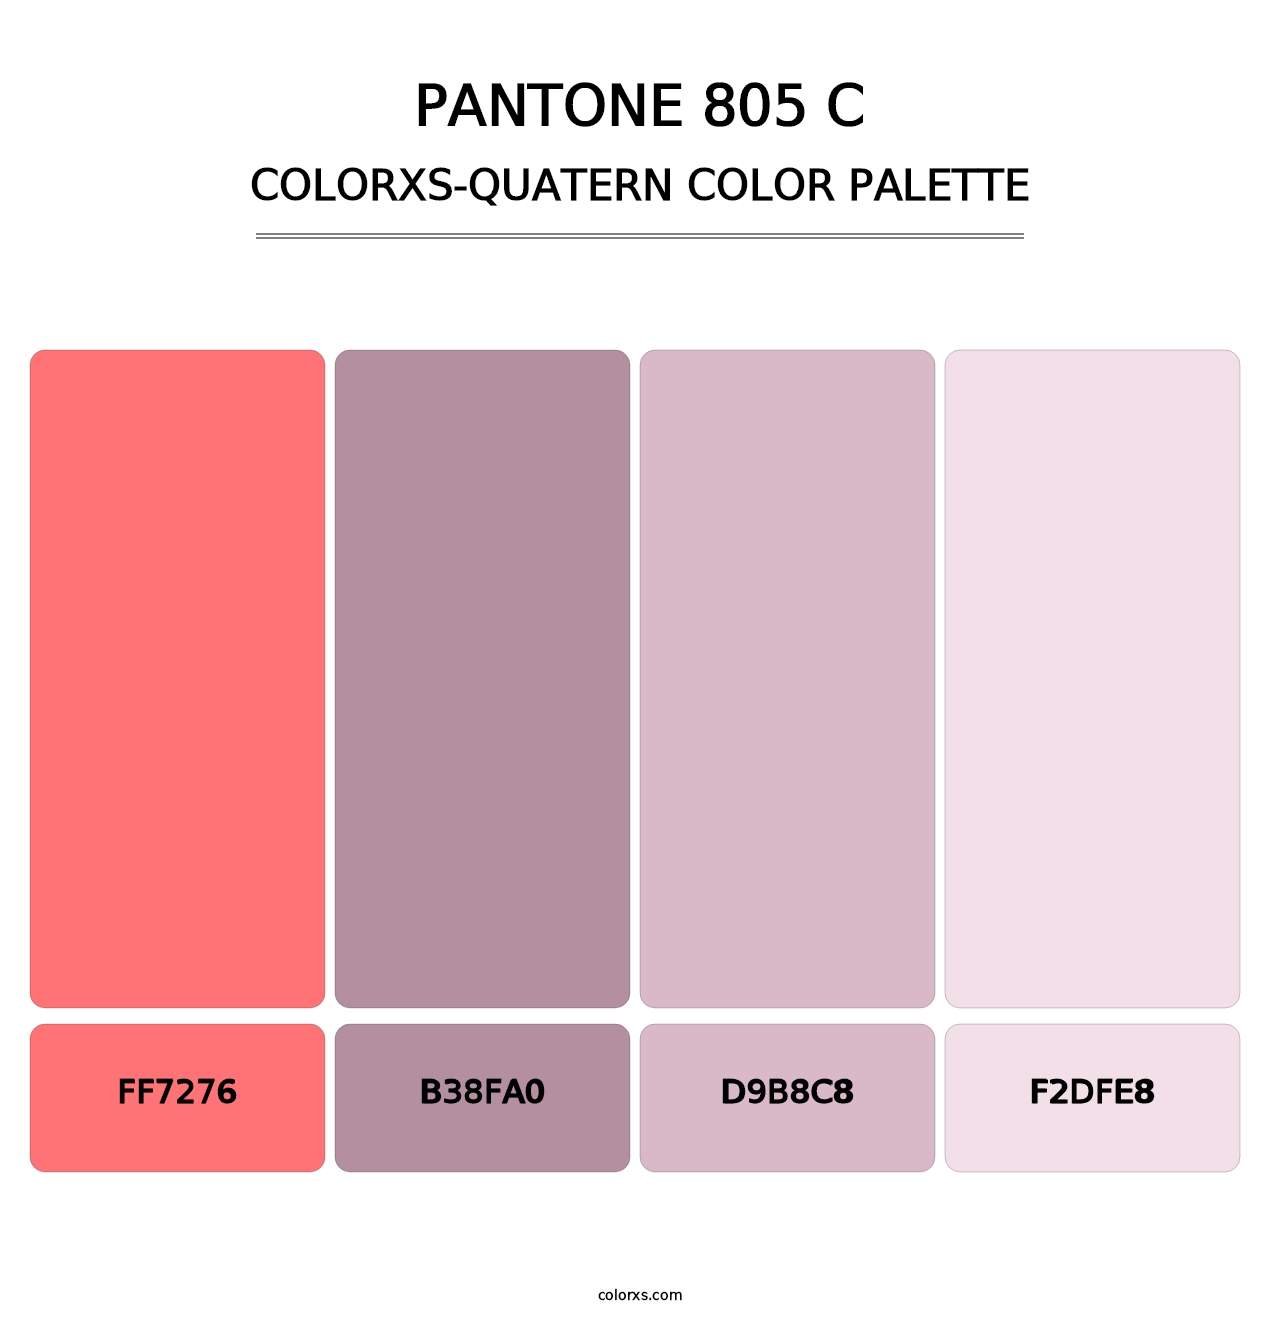 PANTONE 805 C - Colorxs Quatern Palette